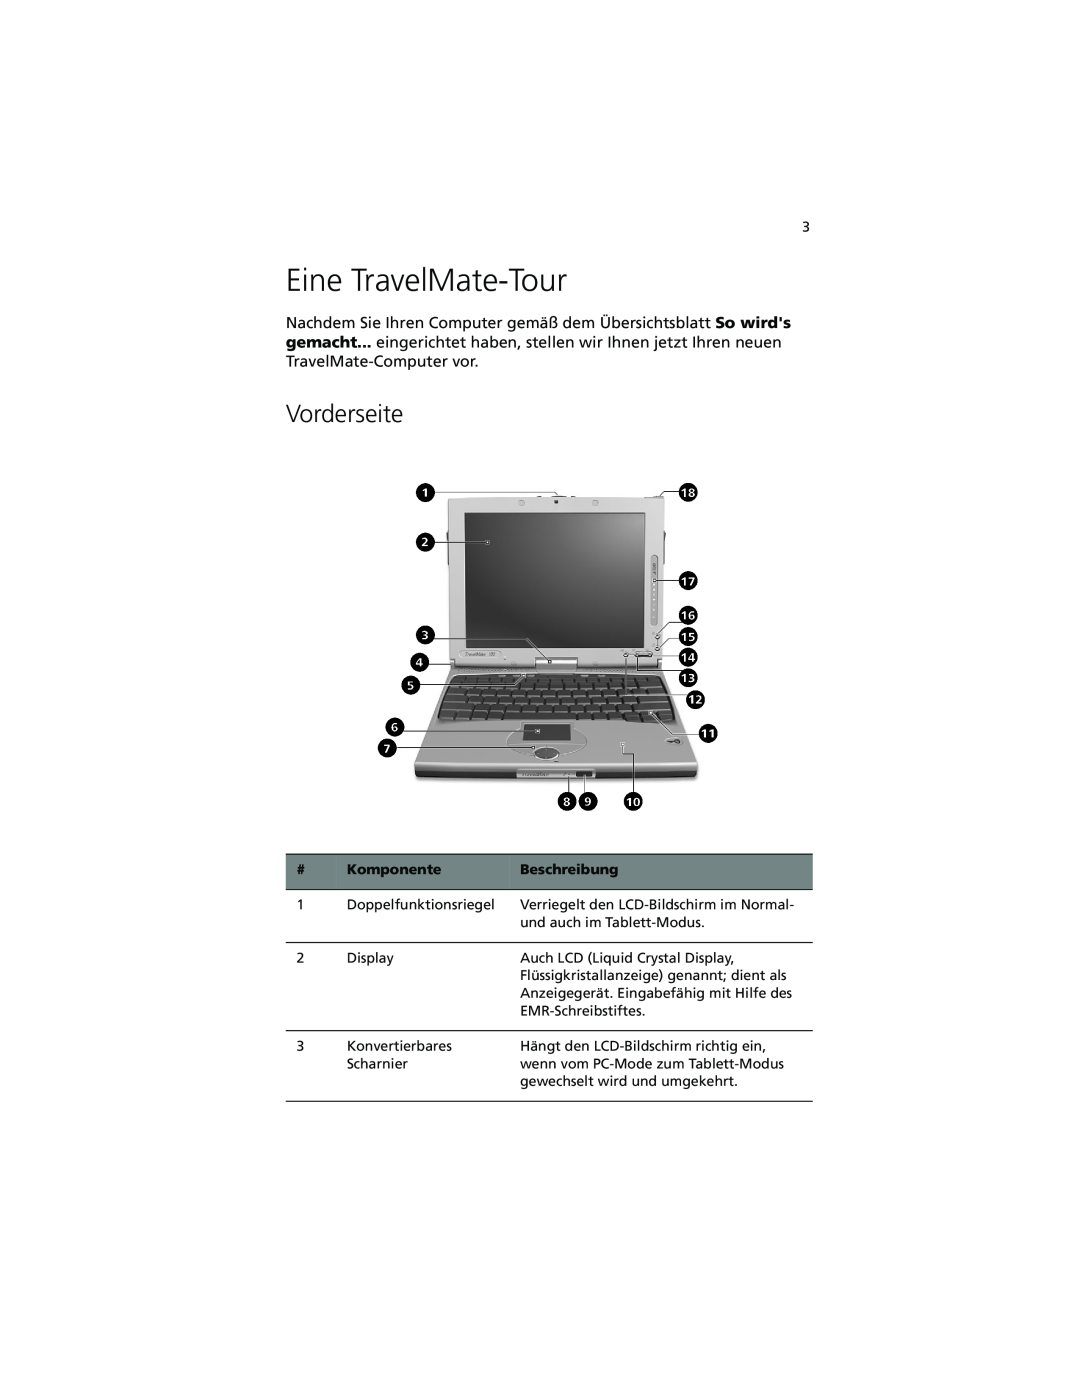 Acer C100-Series manual Eine TravelMate-Tour, Vorderseite, Komponente, Beschreibung 